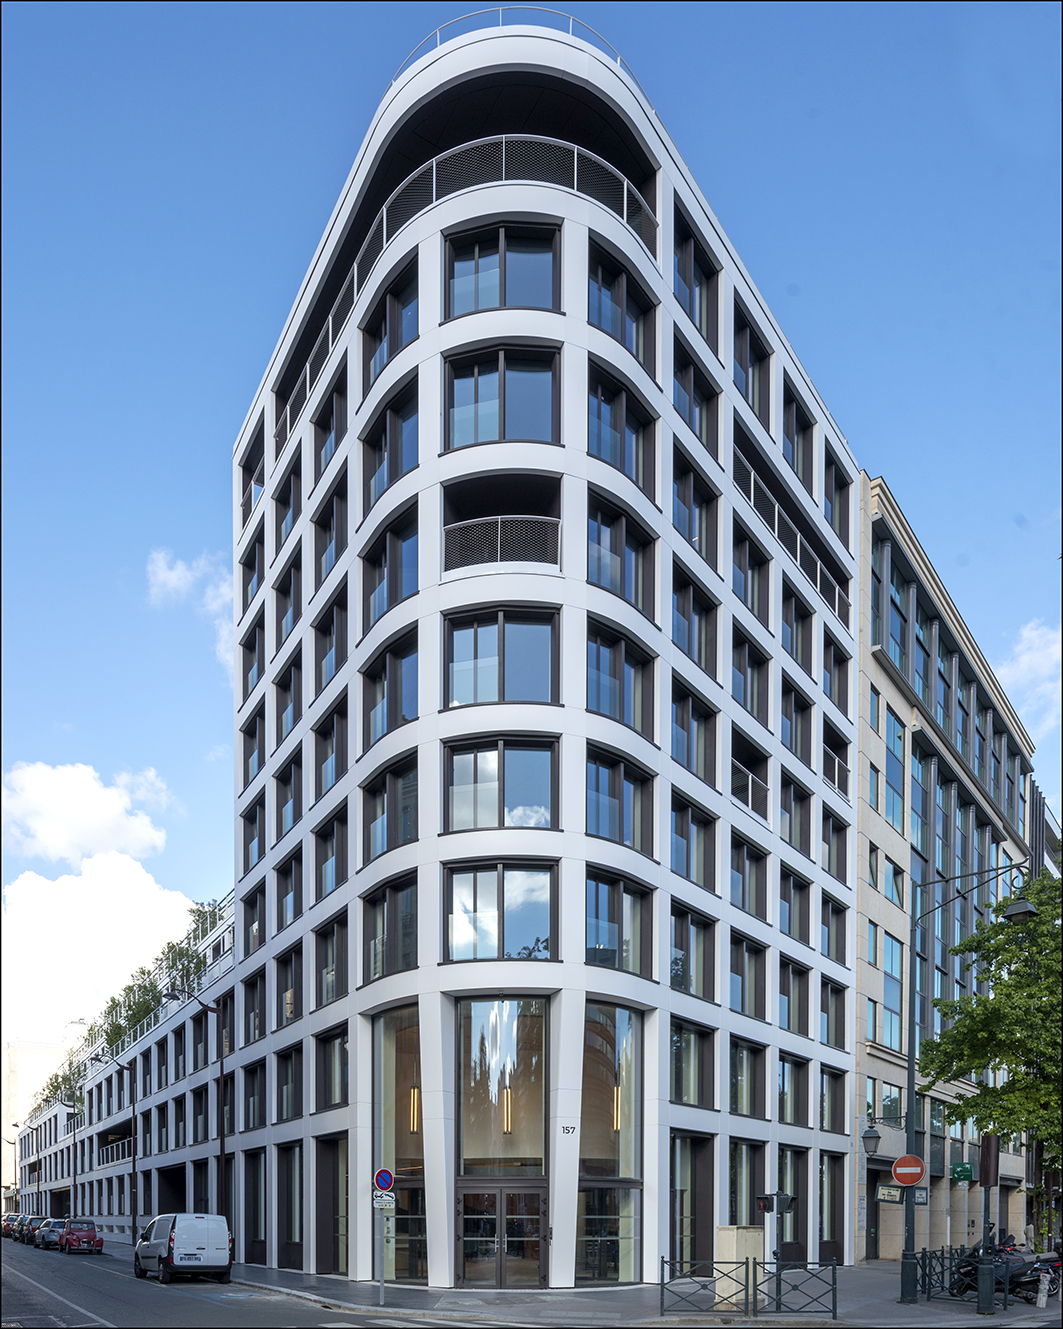 La façade de l’immeuble de bureau à Neuilly (France) a été recouverte de 800 panneaux en Corian® Solid Surface dans le coloris Glacier White